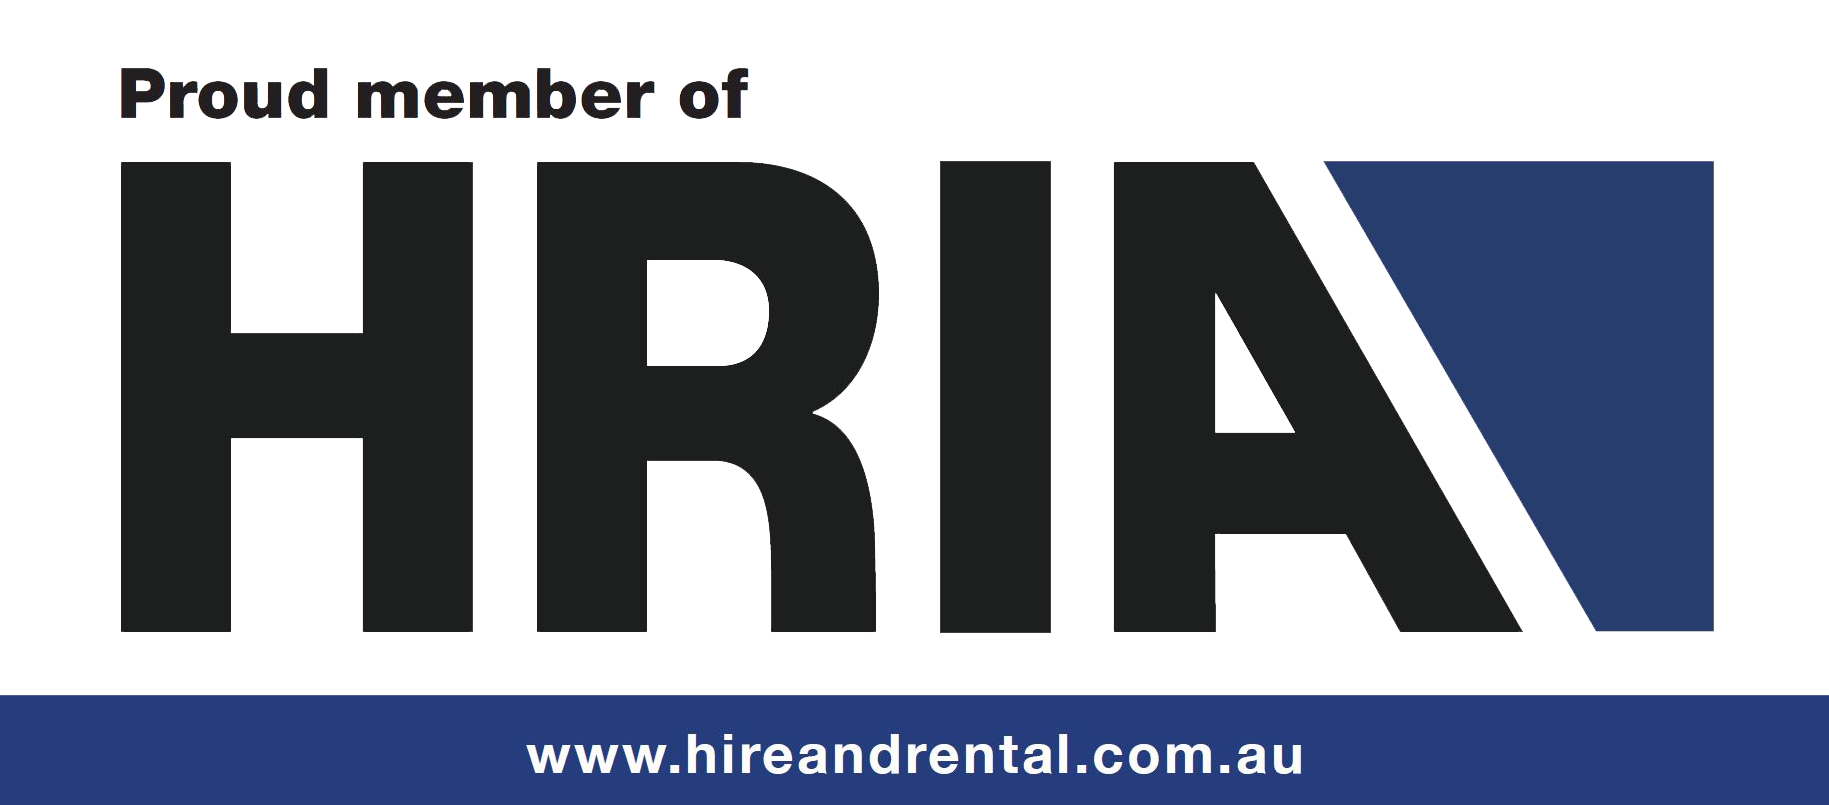 HRIA proud member logo